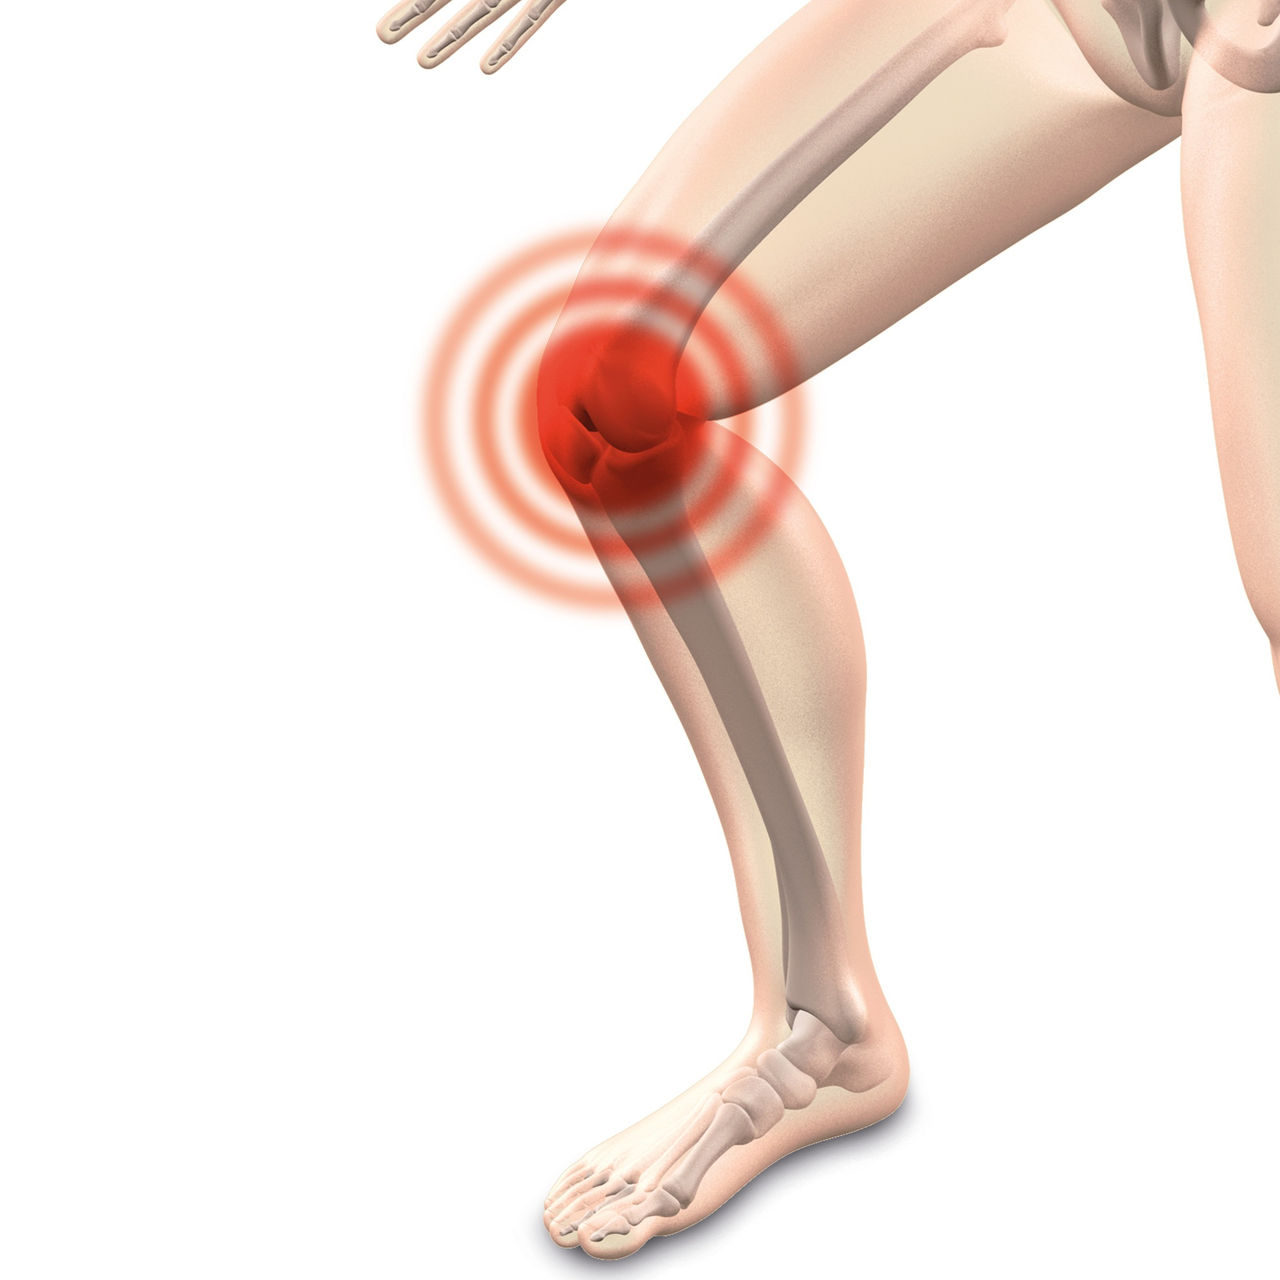 Schmerzen im Kniegelenk: Mariahilf informiert über Ursachen, Diagnose und moderner Therapie